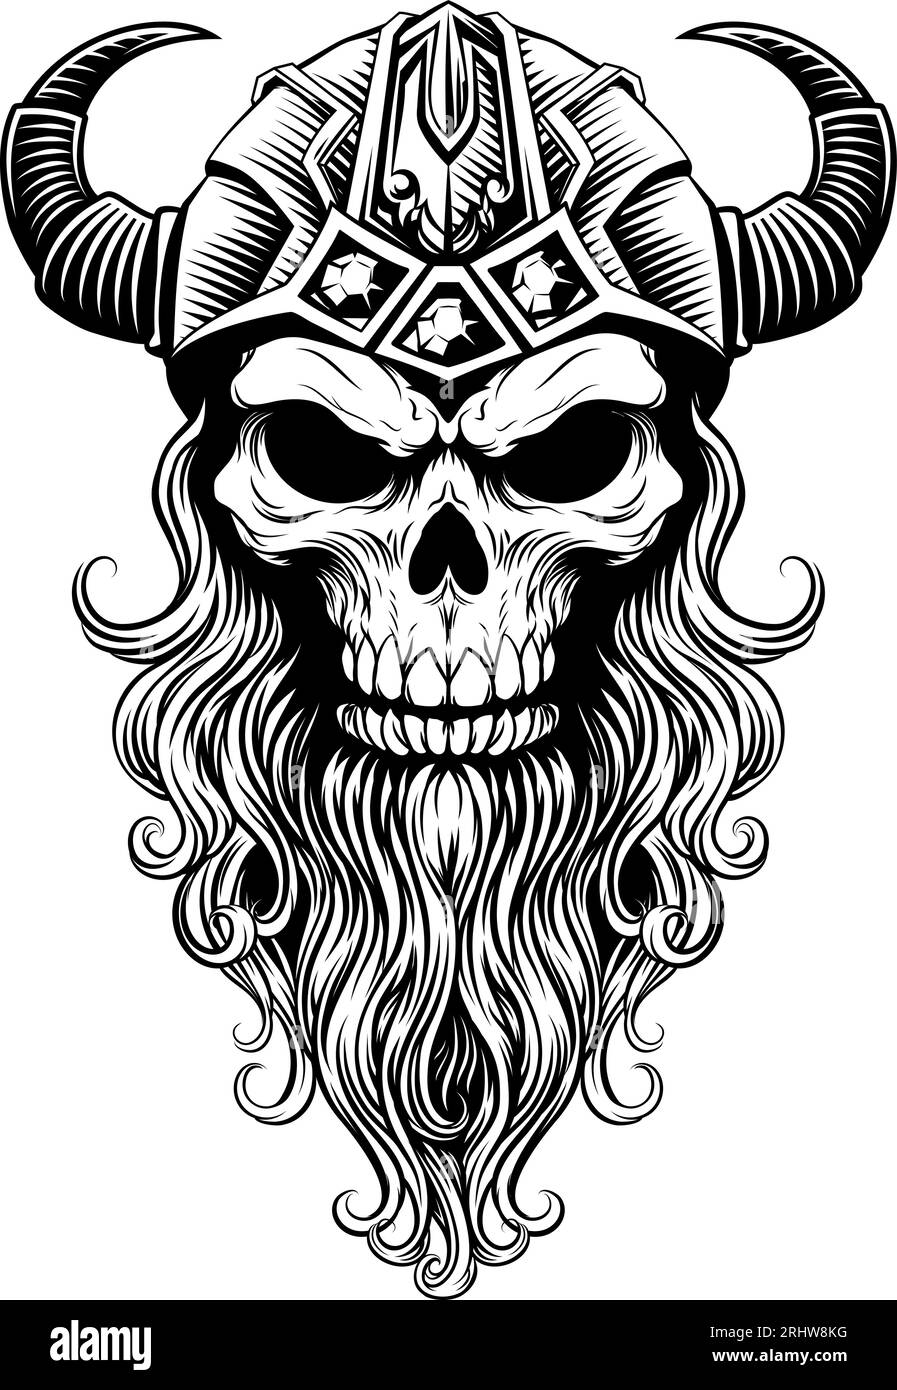 Viking Warrior Skull Man Mascot Face in Helmet Stock Vector